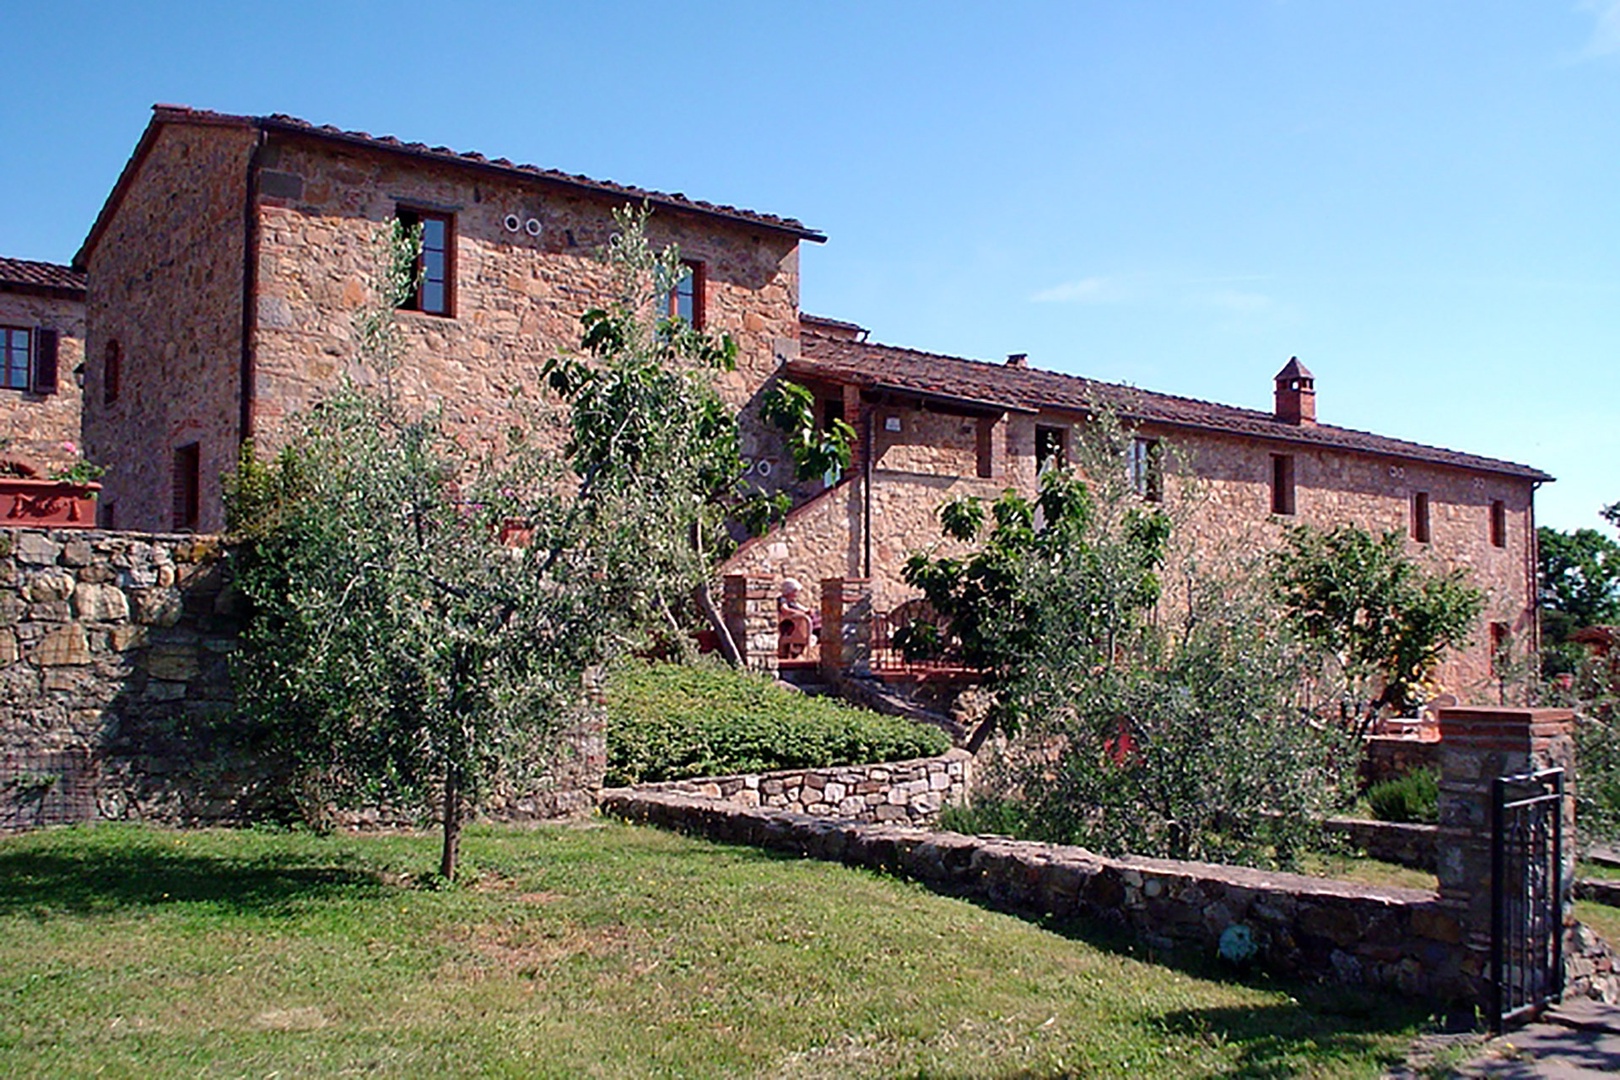 Bucine Cotogno has two terraces and a private garden area.